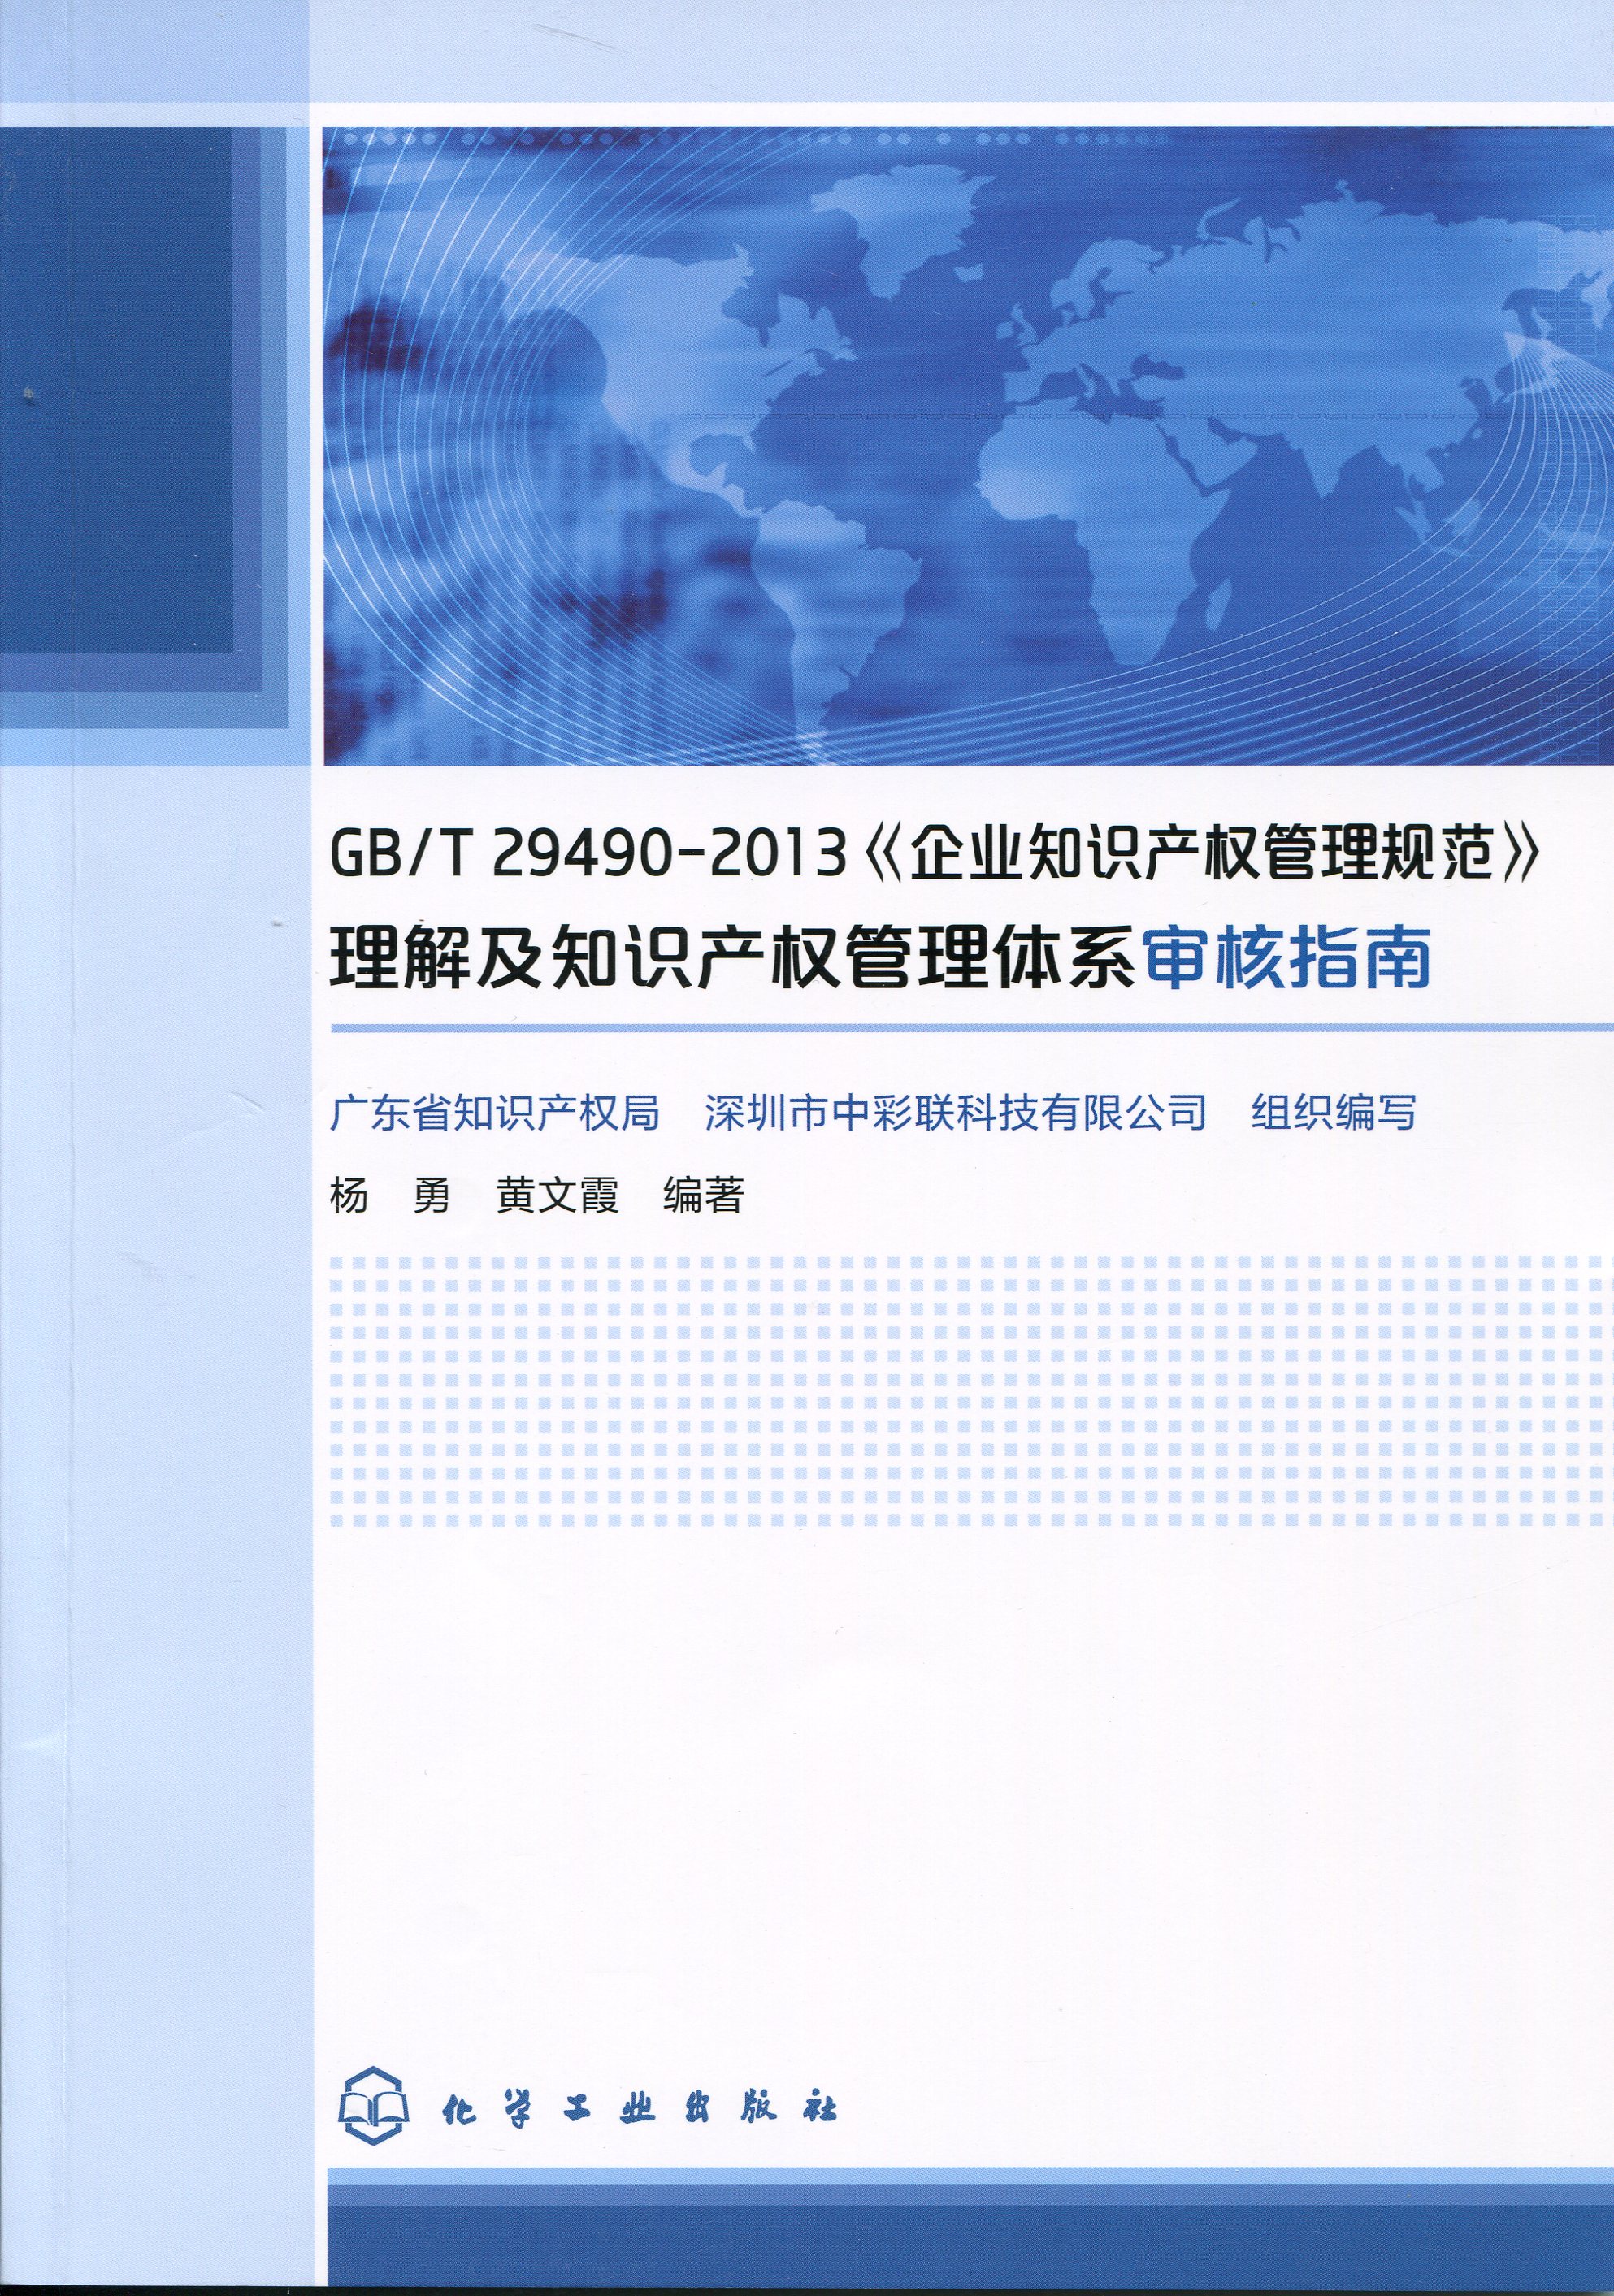 GB/T29490-2013《企業知識產權管理規范》理解及知識產權管理體系審核指南